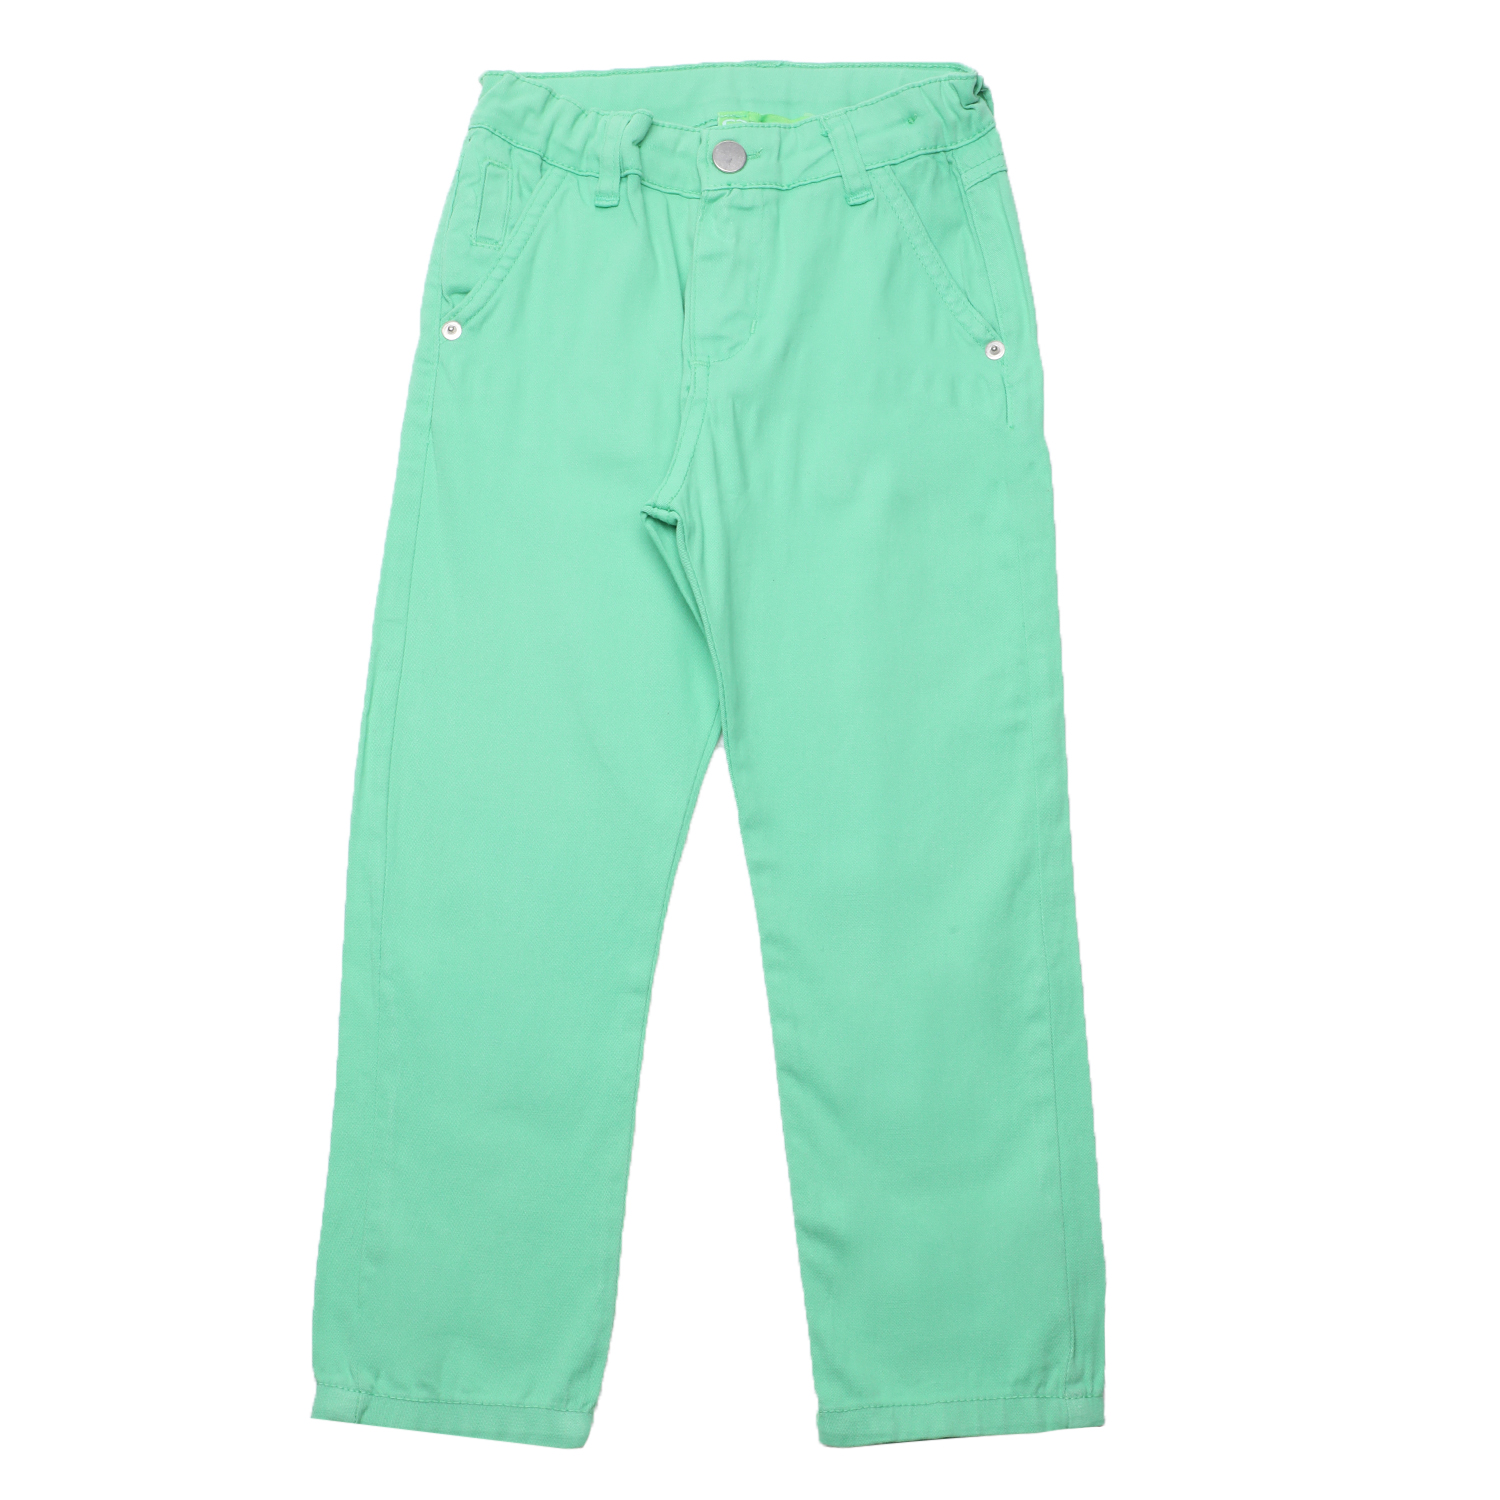 Παιδικά/Boys/Ρούχα/Παντελόνια SAM 0-13 - Παιδικό chino παντελόνι SAM 0-13 πράσινο